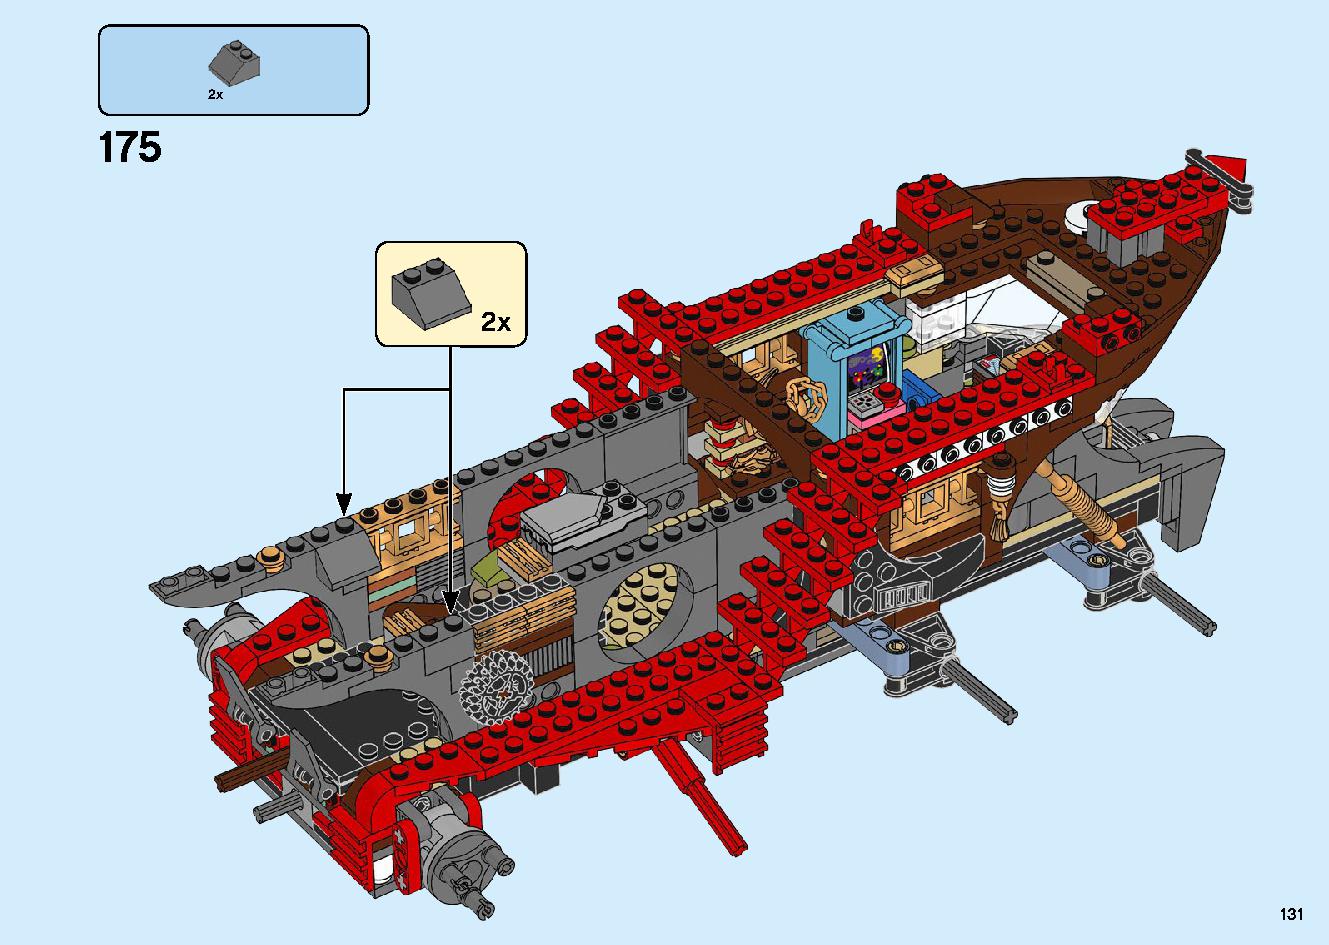 陸上戦艦バウンティ号 70677 レゴの商品情報 レゴの説明書・組立方法 131 page